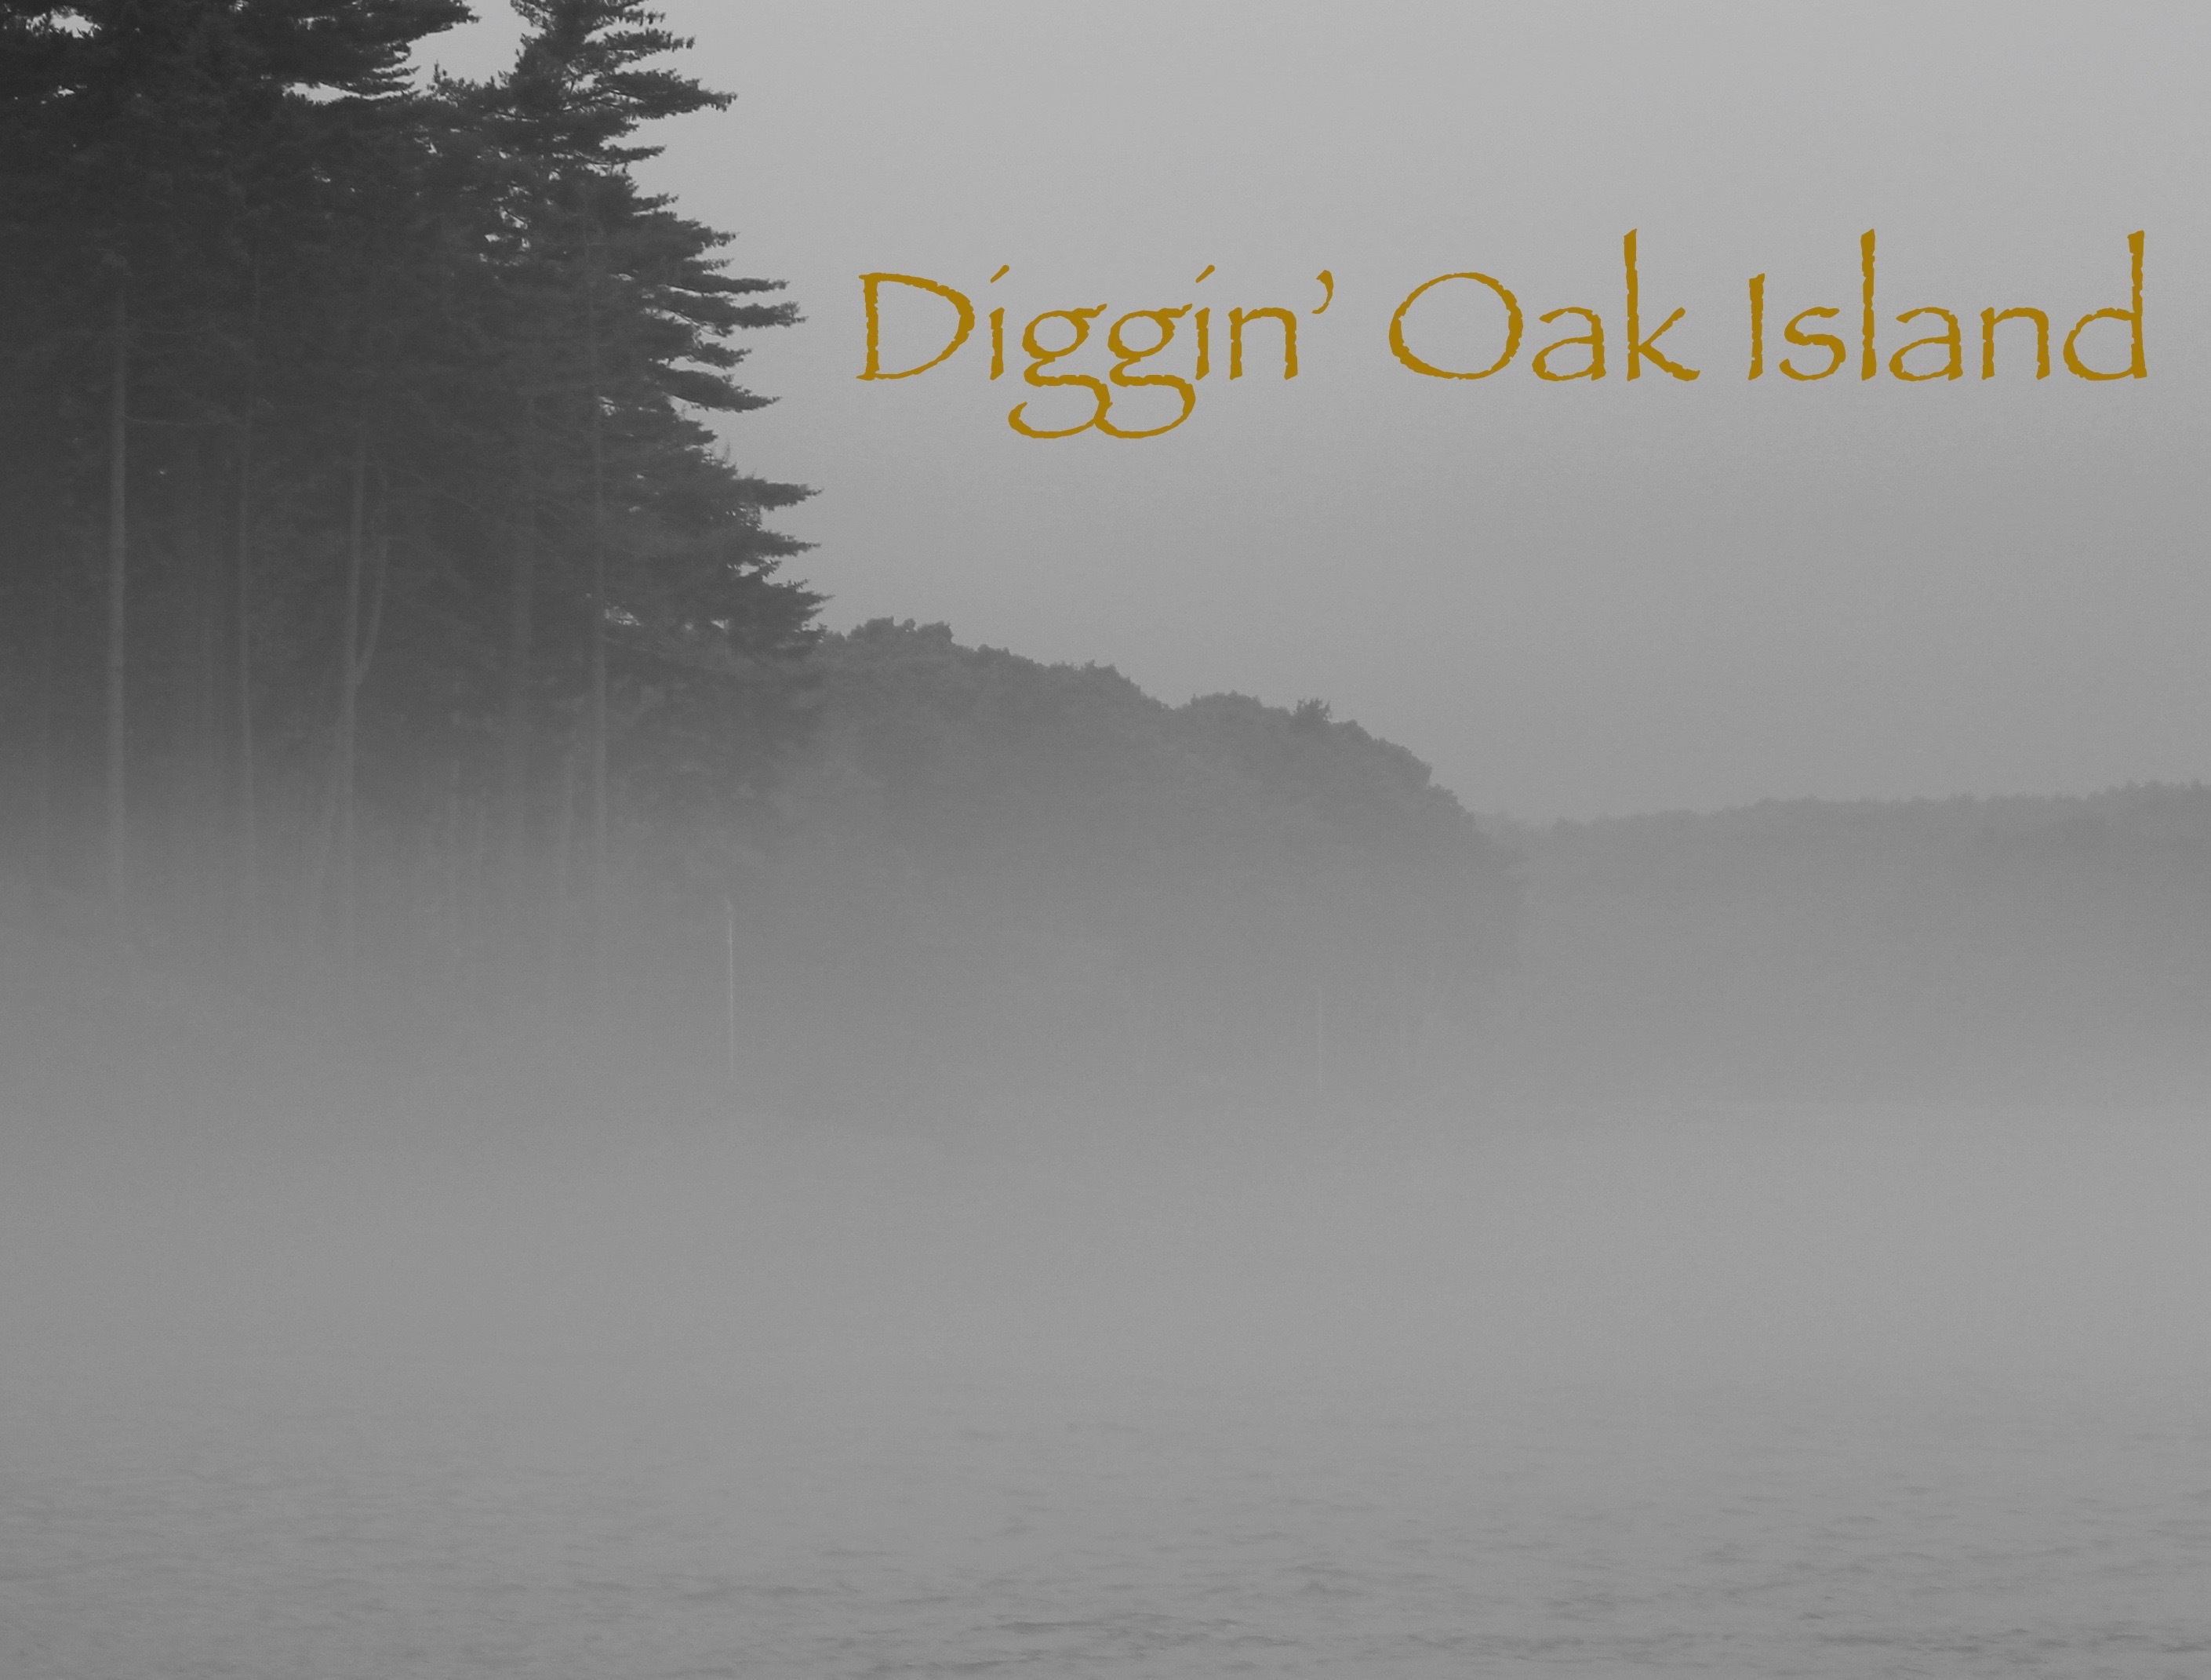 Diggin' Oak Island